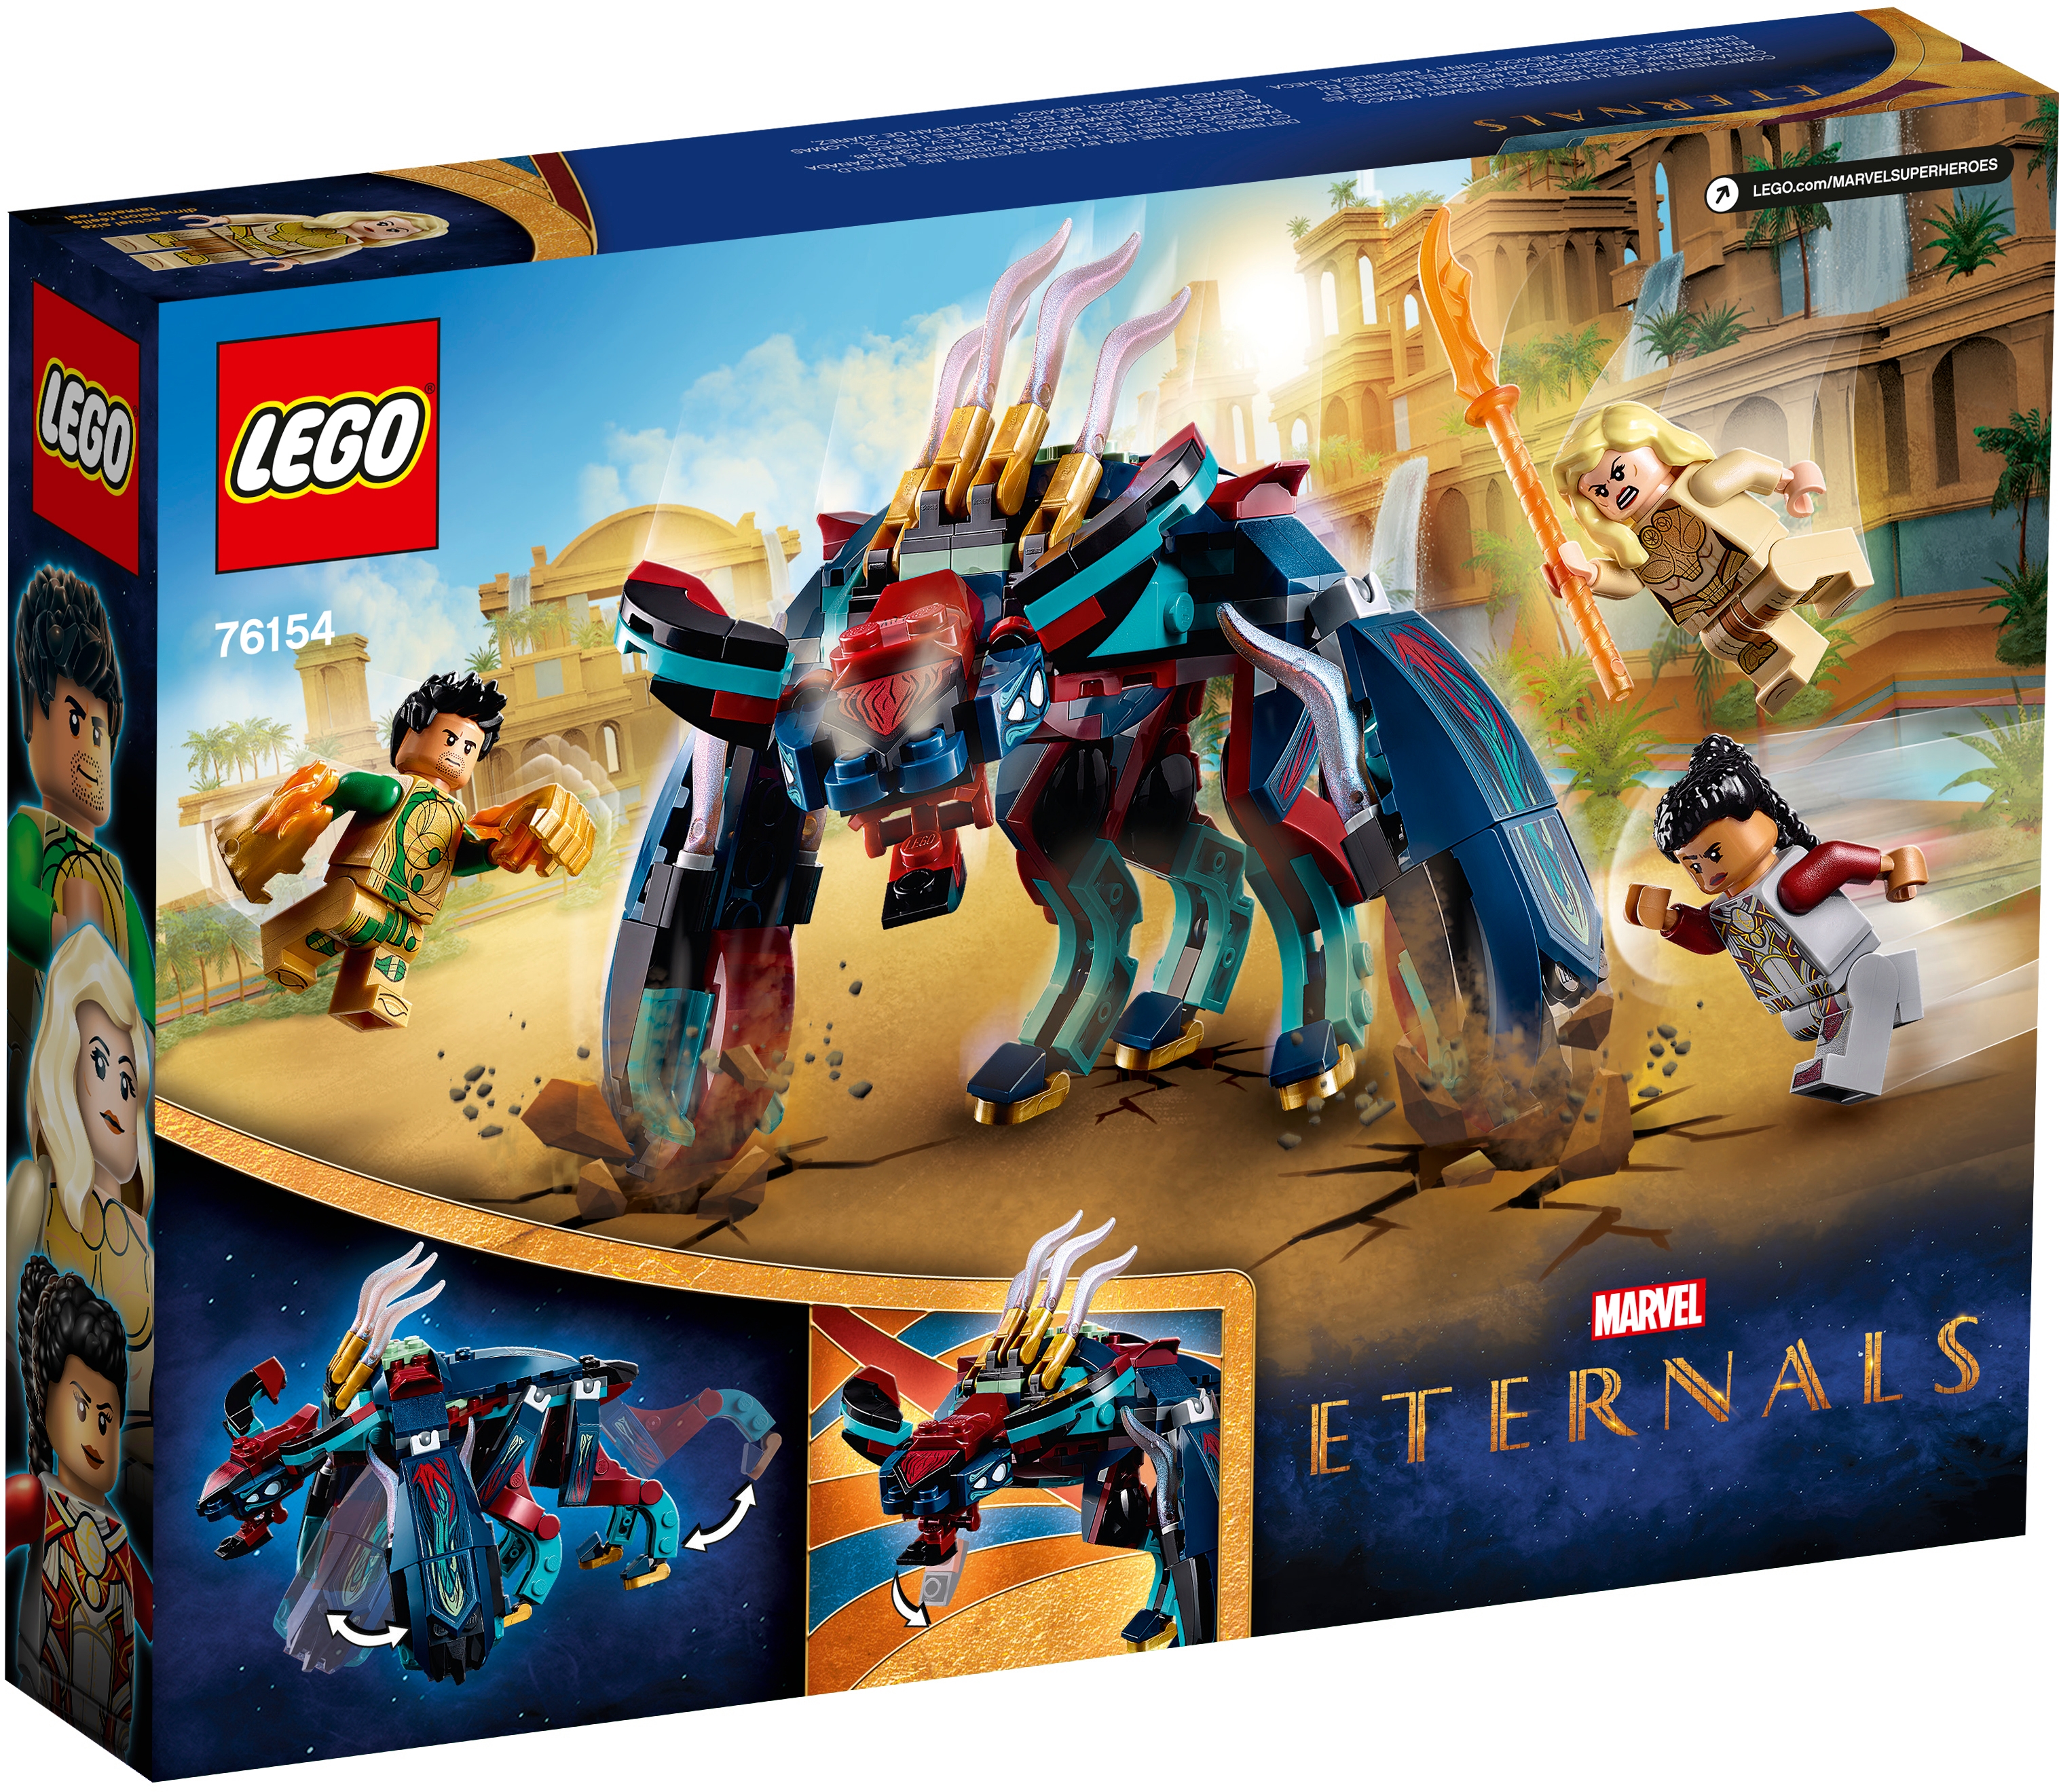 197 Stück alter 6+ 76154 Lego Super Heroes Marvel Eternals die abweichenden Hinterhalt